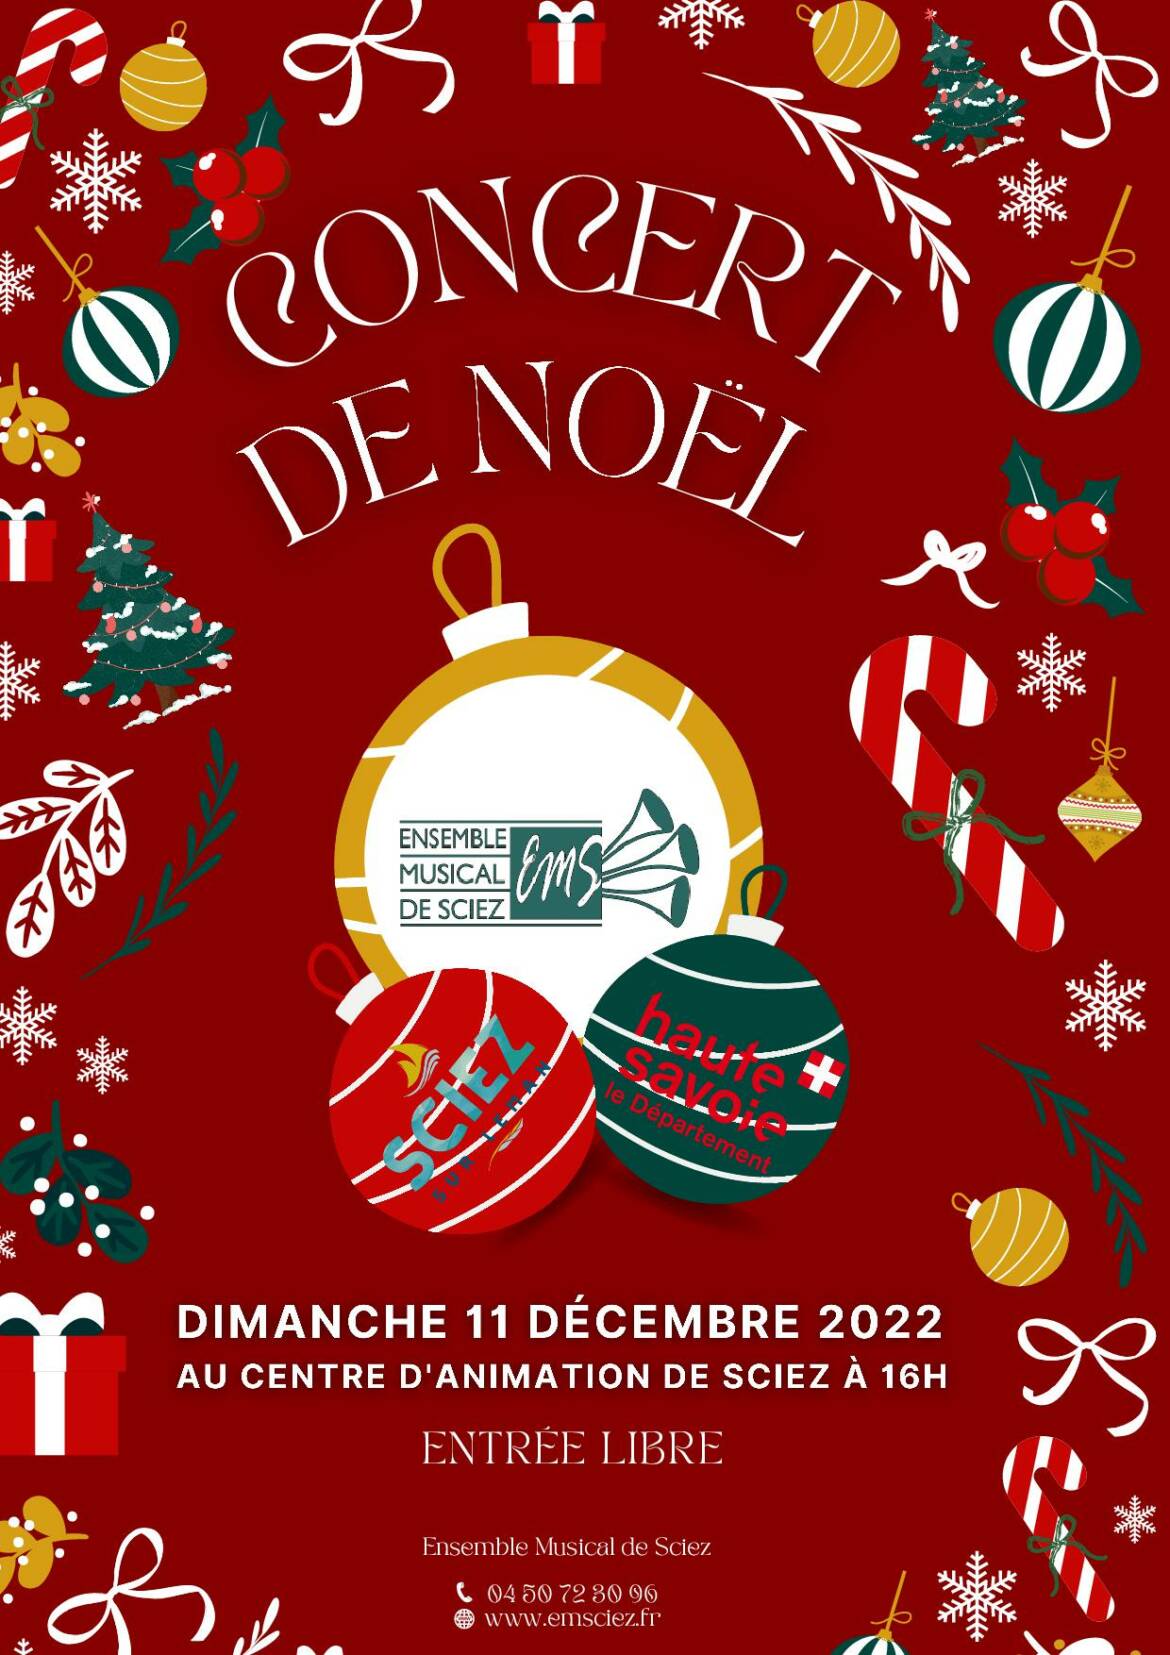 Concert-de-Noel-11-decembre-2022.jpg